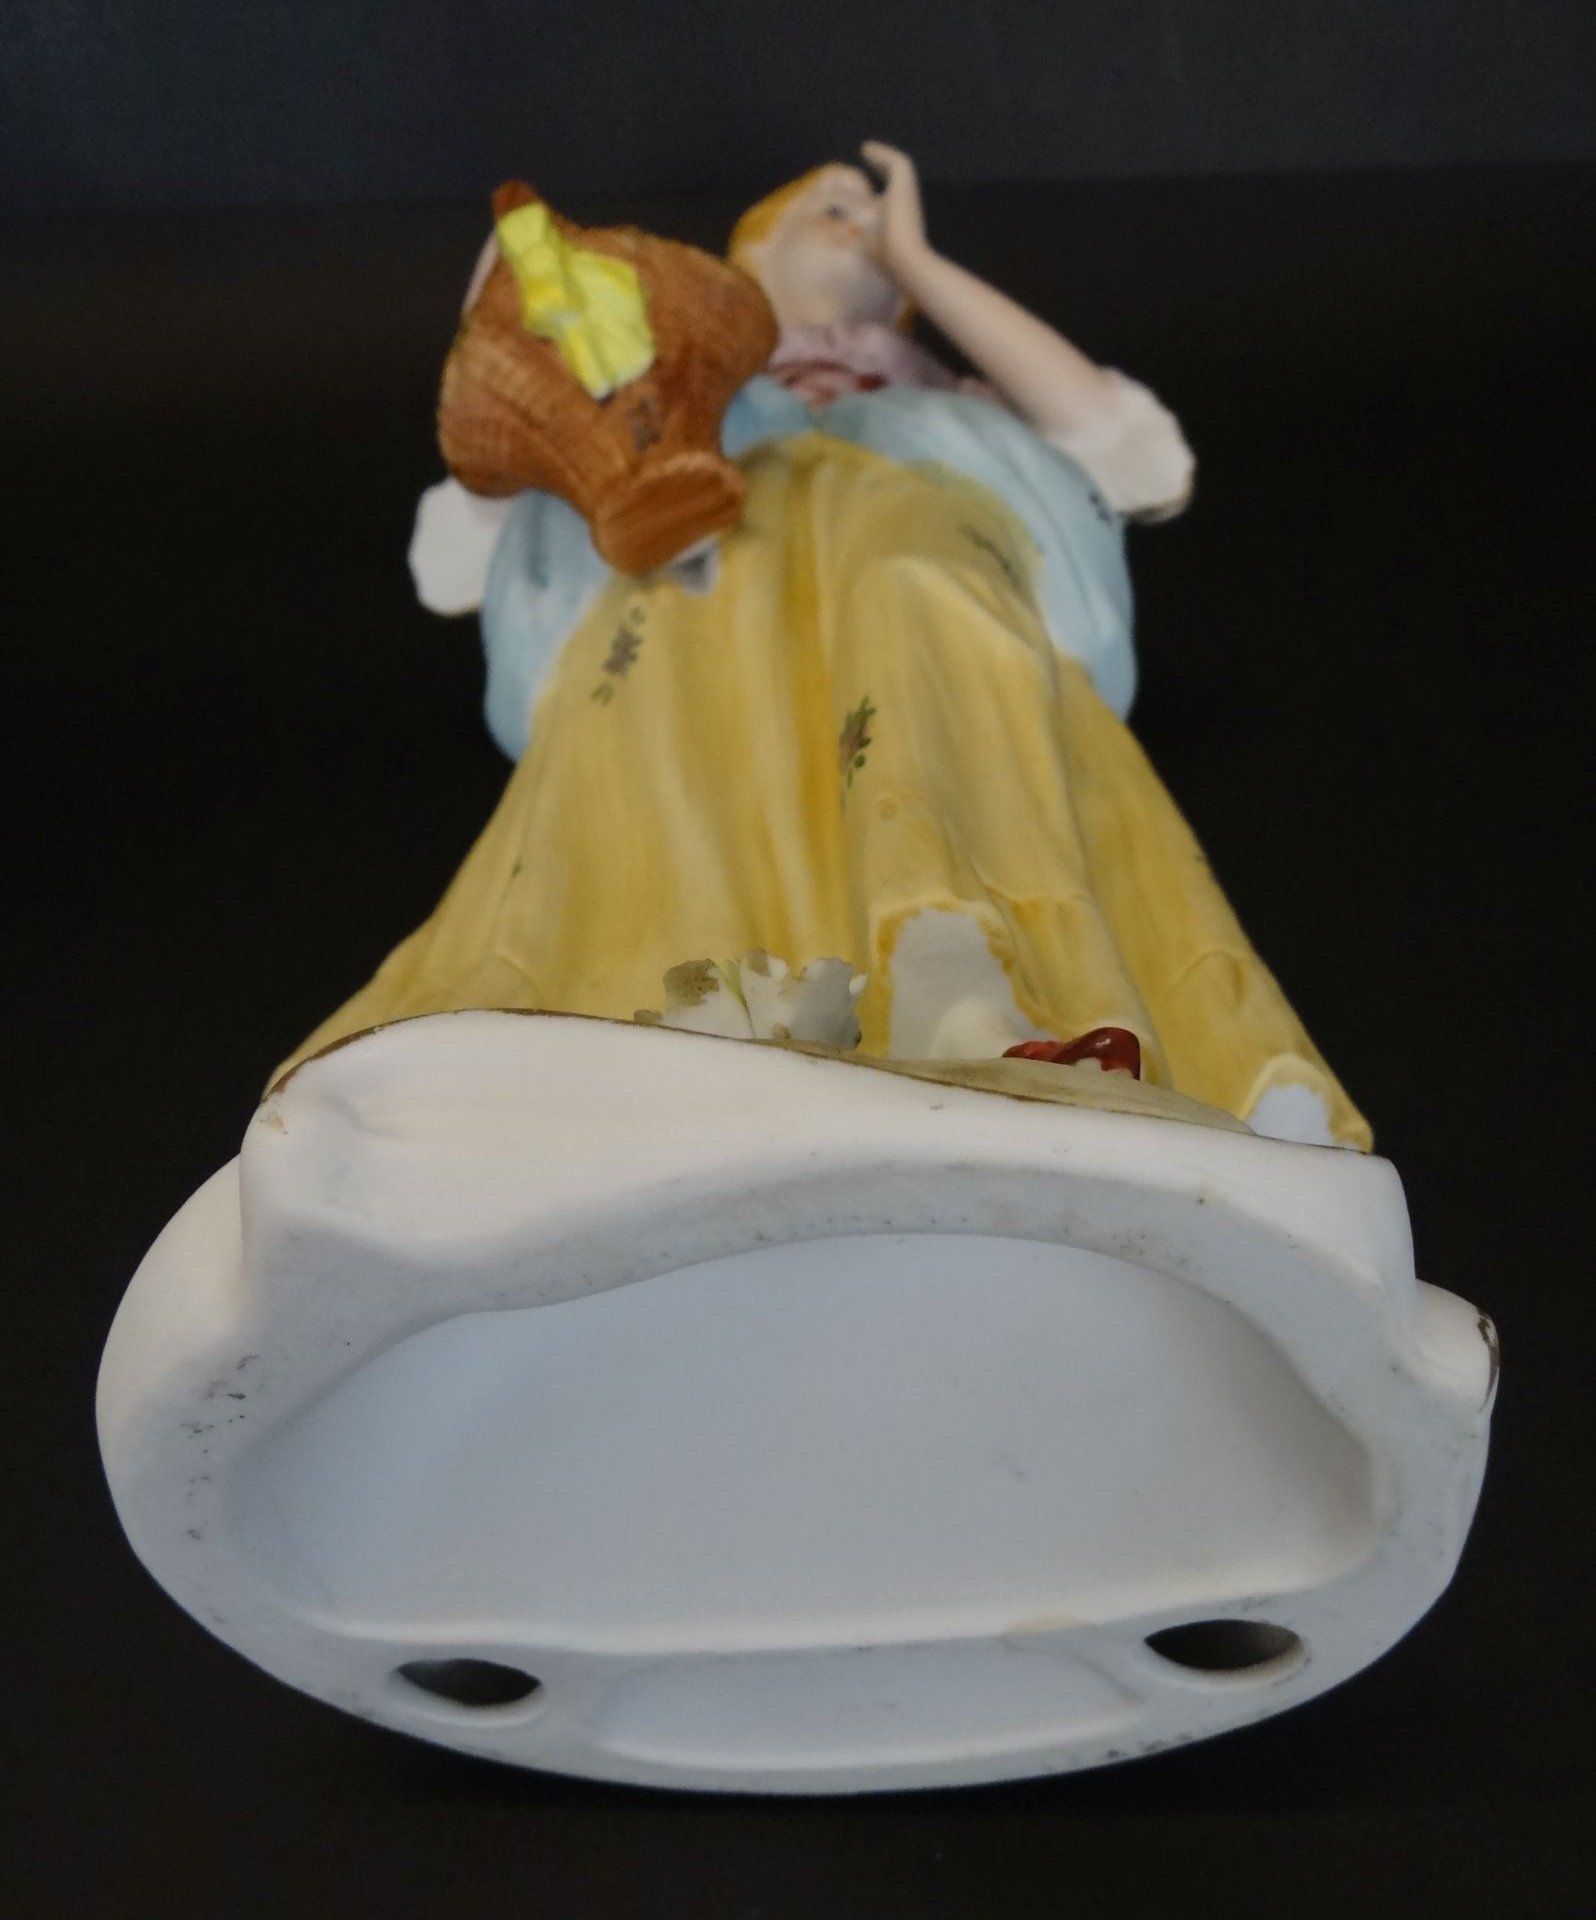 hohe Bisquitporzellan-Figur "Mädchen mit Blumenkorb", ein Daumen beschädigt, linke Hand geklebt, - Image 7 of 7